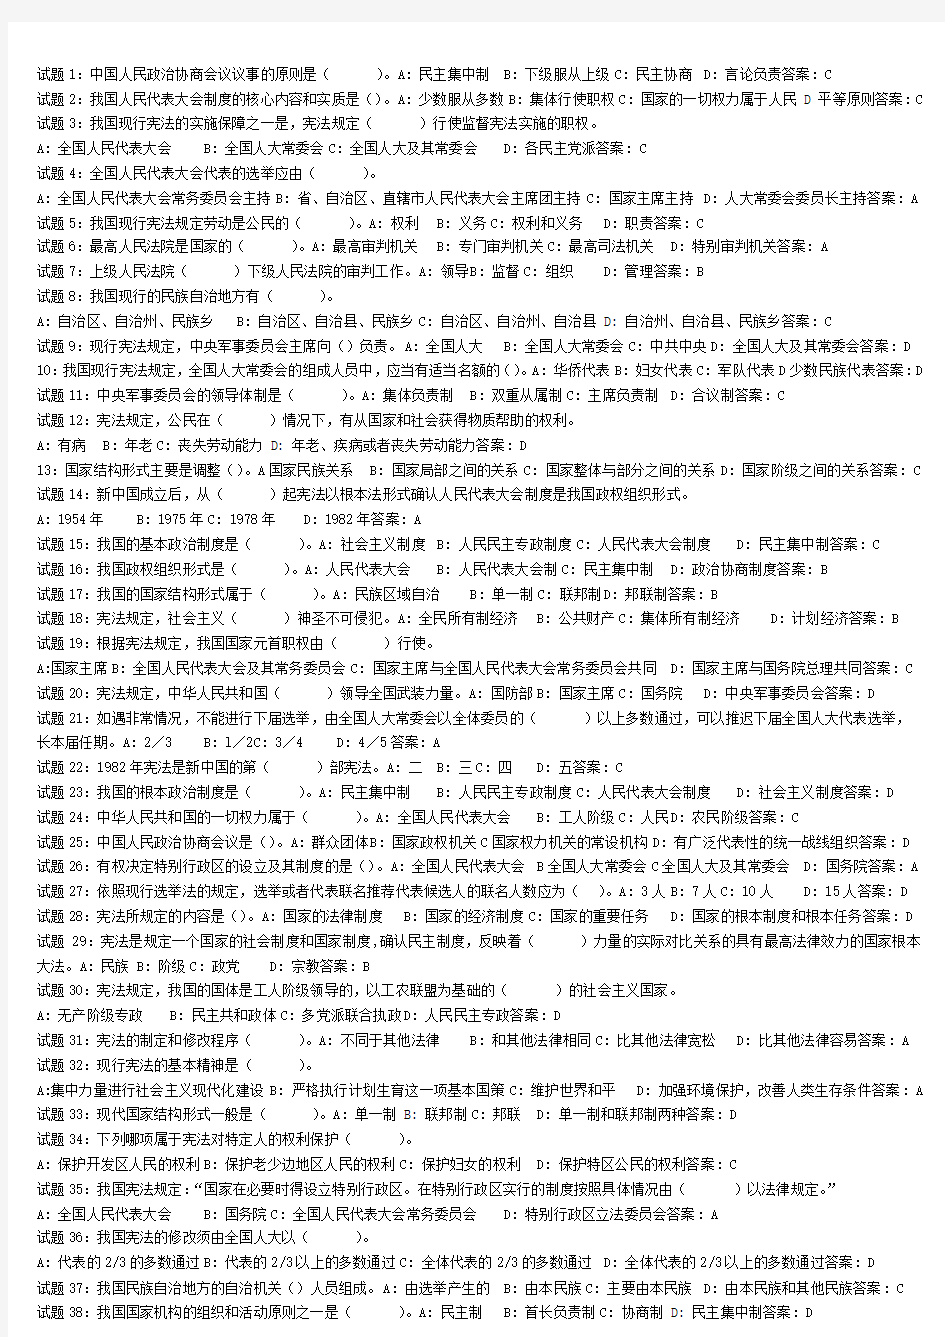 2012国家公务员考试宪法试题(414道)